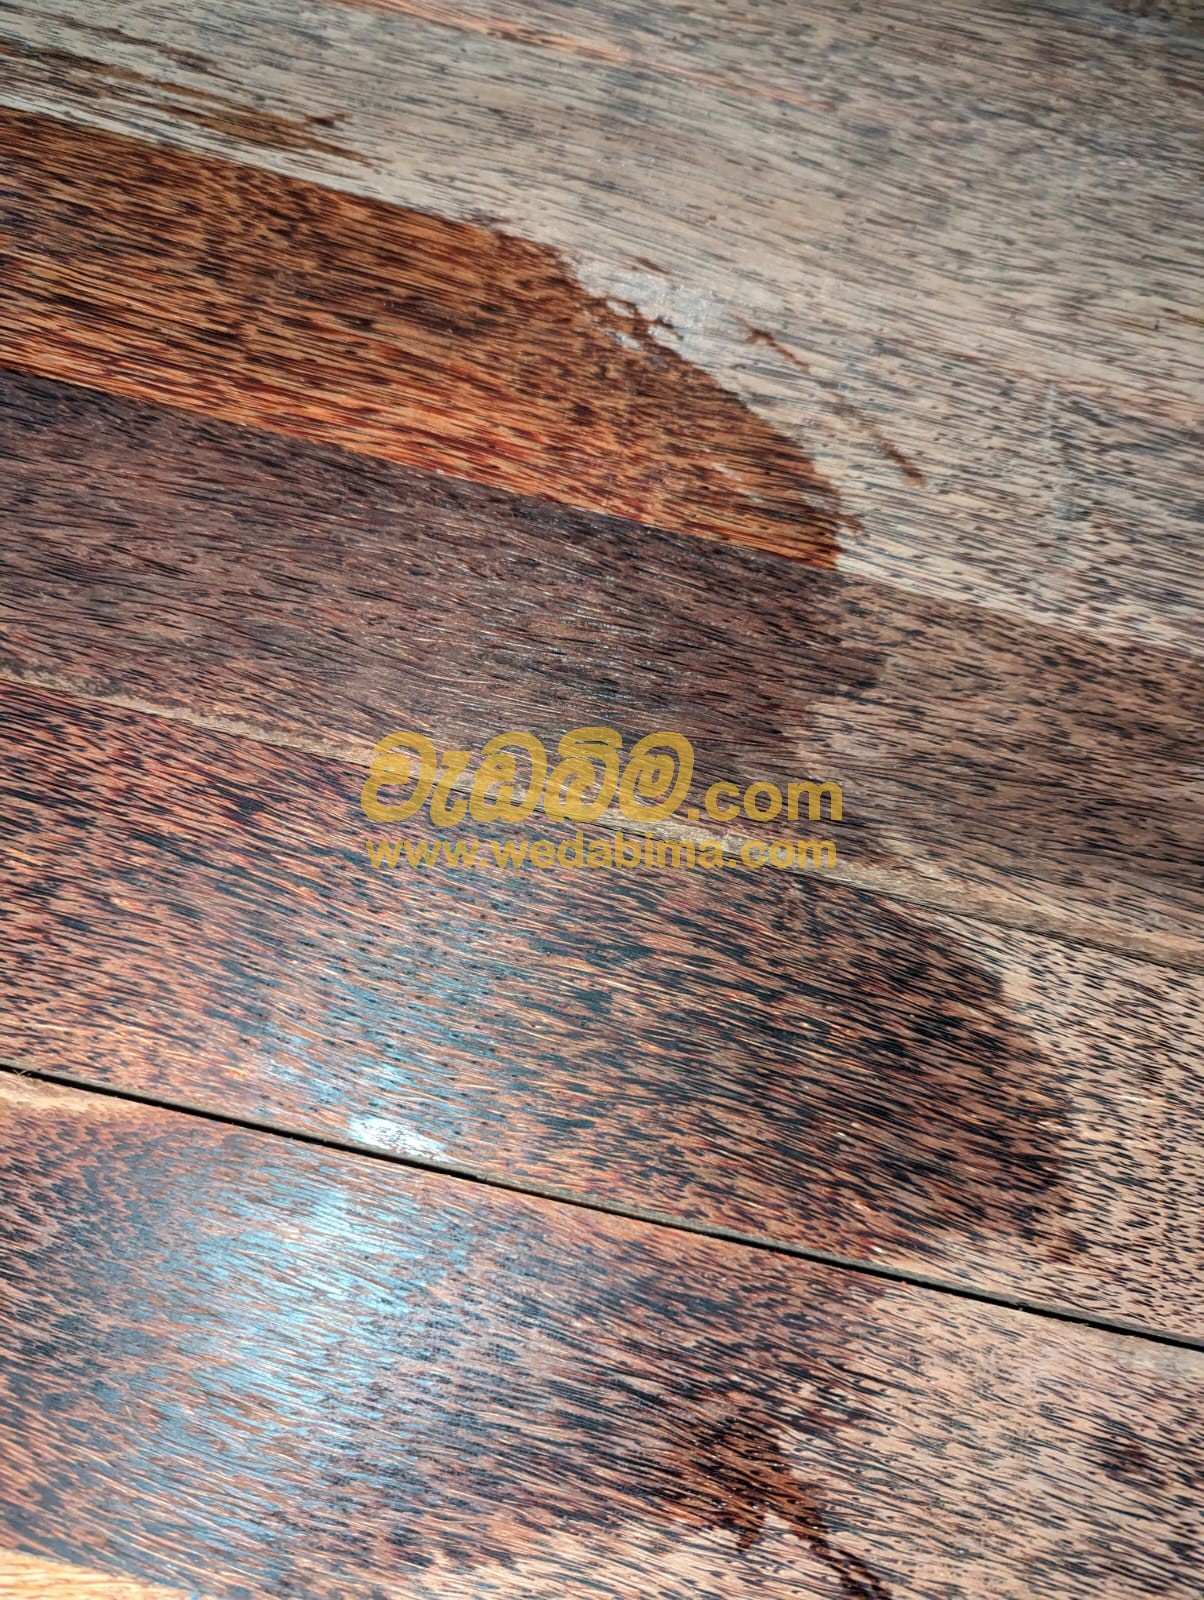 Cover image for Coconut timber in Sri Lanka